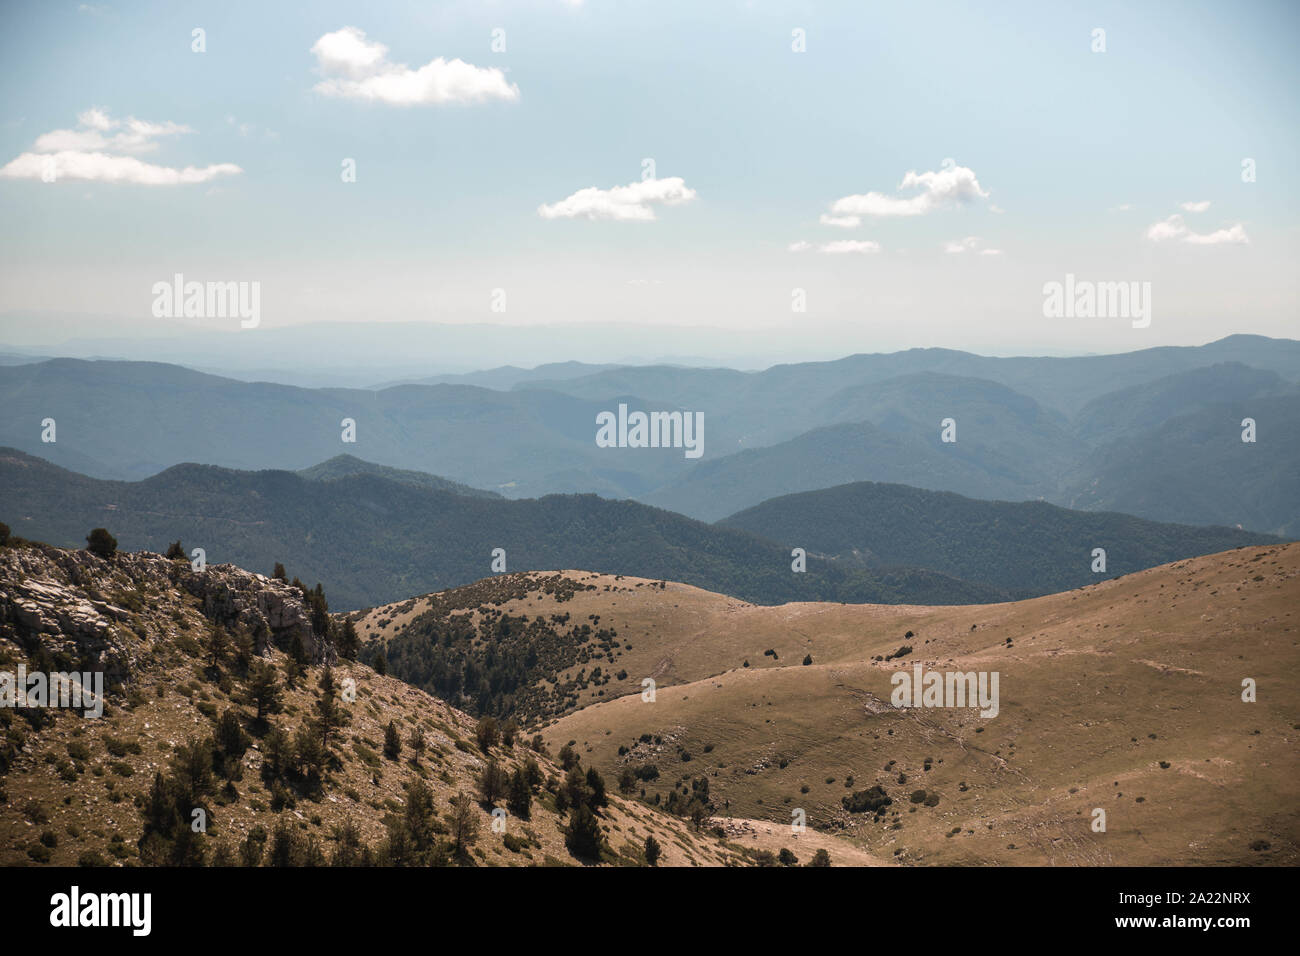 Montañas y soledad Stock Photo